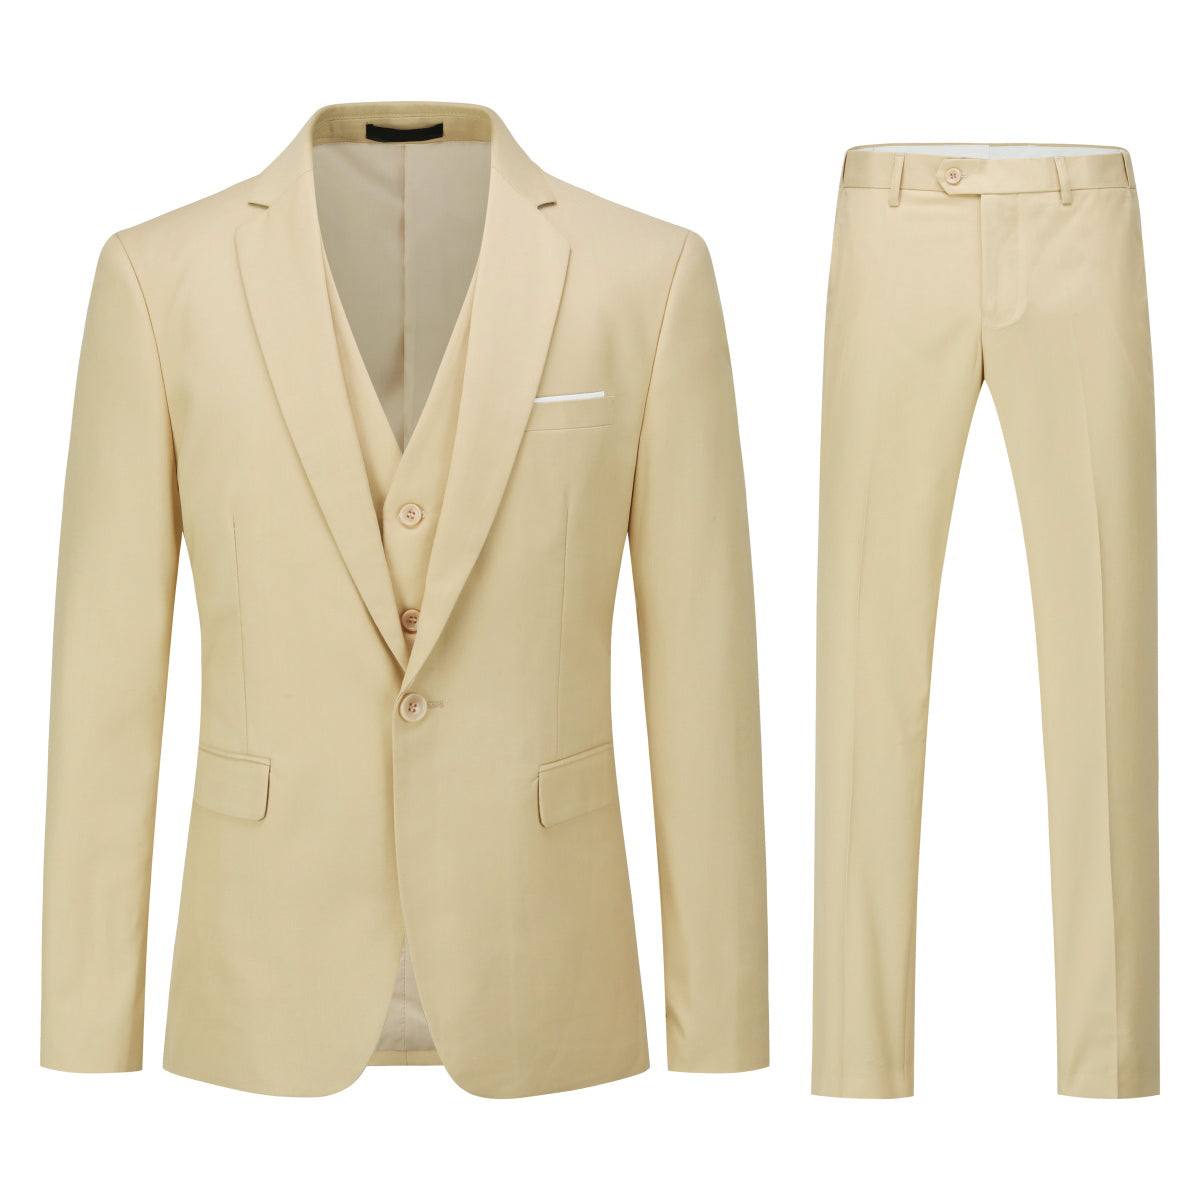 3-Piece One Button Formal Suit Beige Suit